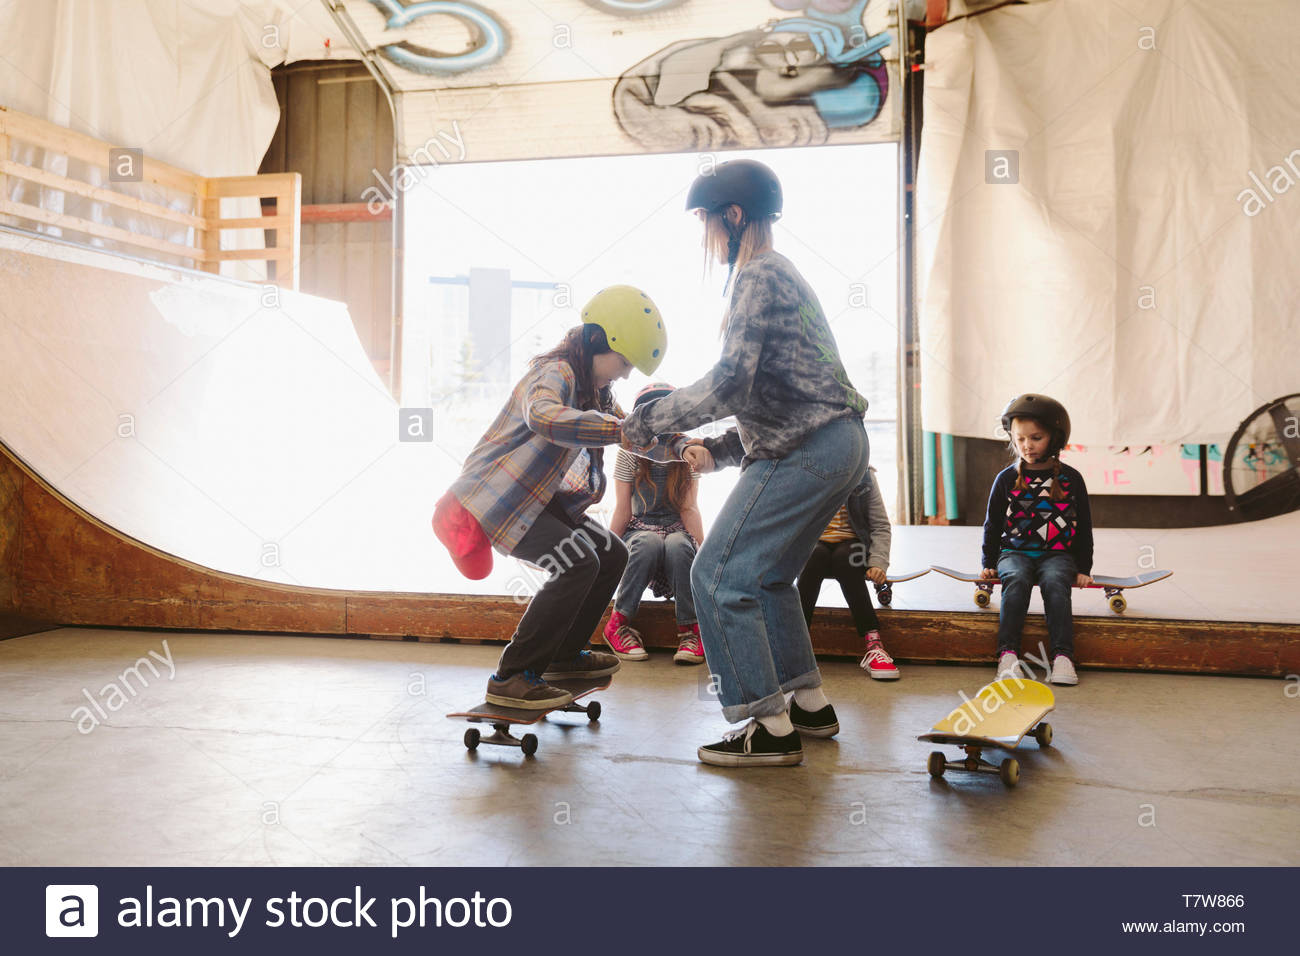 Los niños aprenden a monopatín en skate park interior Foto de stock